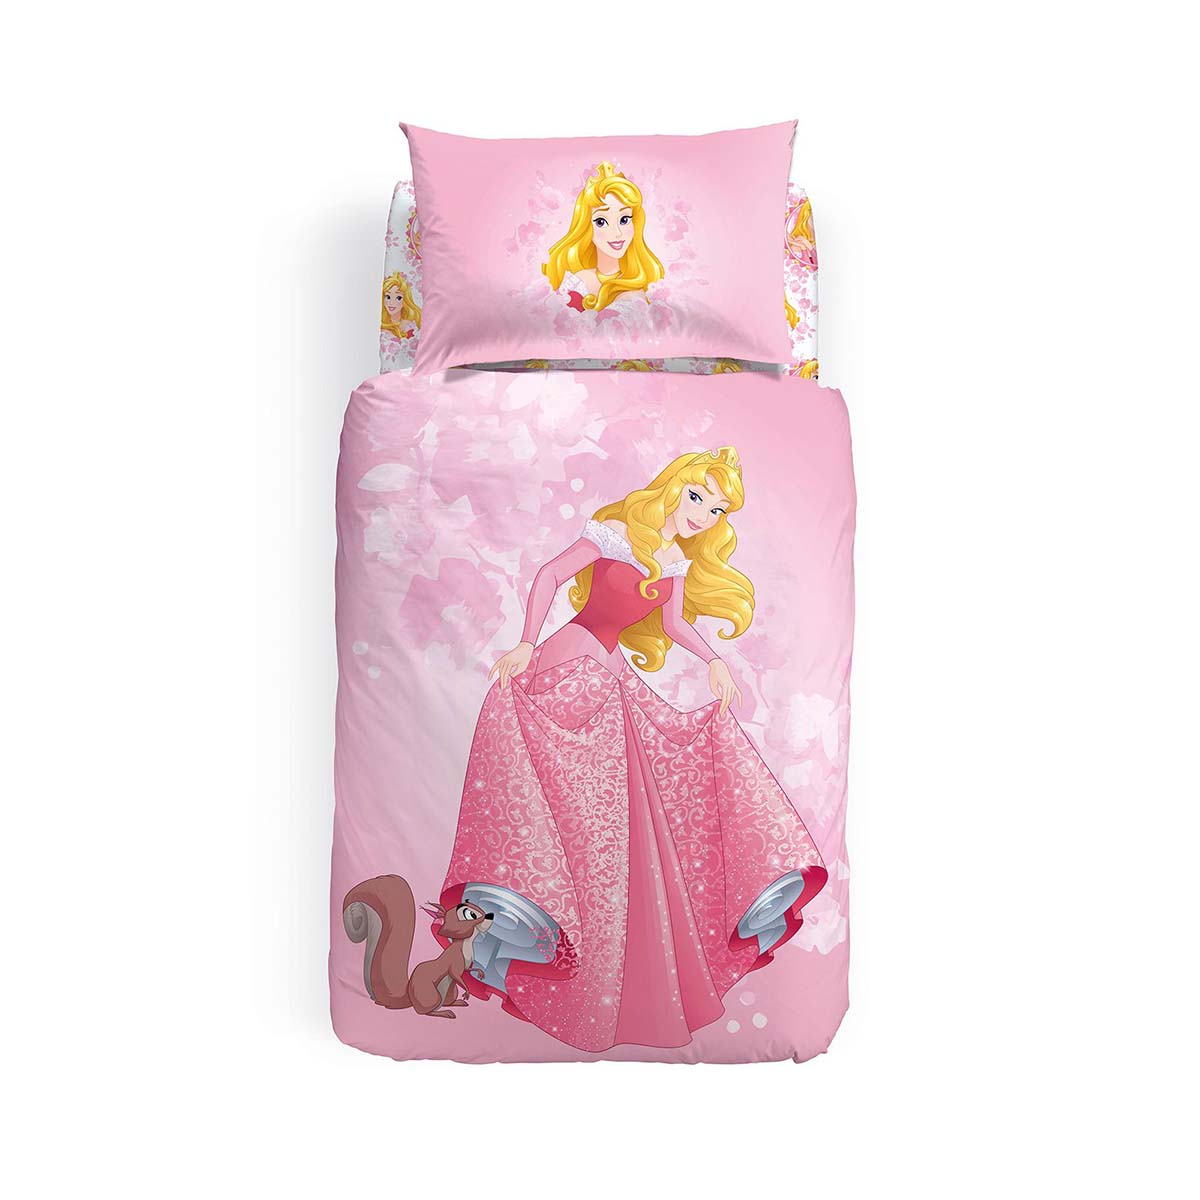 Completo Copripiumino Princess Aurora in puro cotone per letto singolo. Linea Caleffi Disney. Copripiumone per bambina con delicata fantasia piazzata su fondo rosa, con la Principessa Disney Aurora